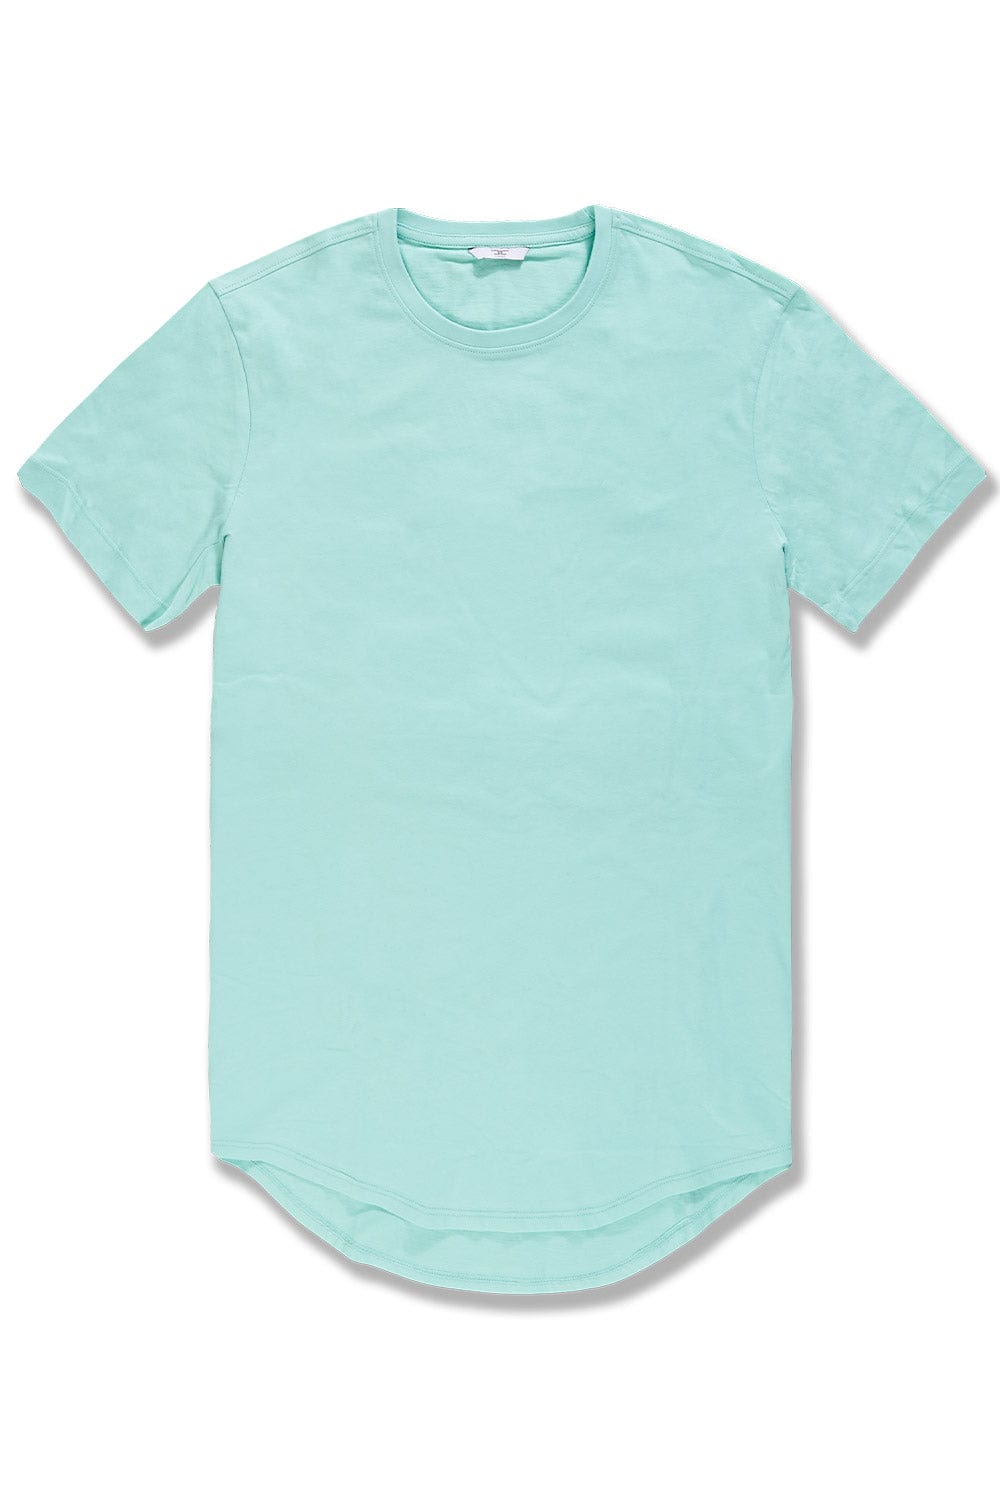 Jordan Craig Scallop T-Shirt Aqua / S